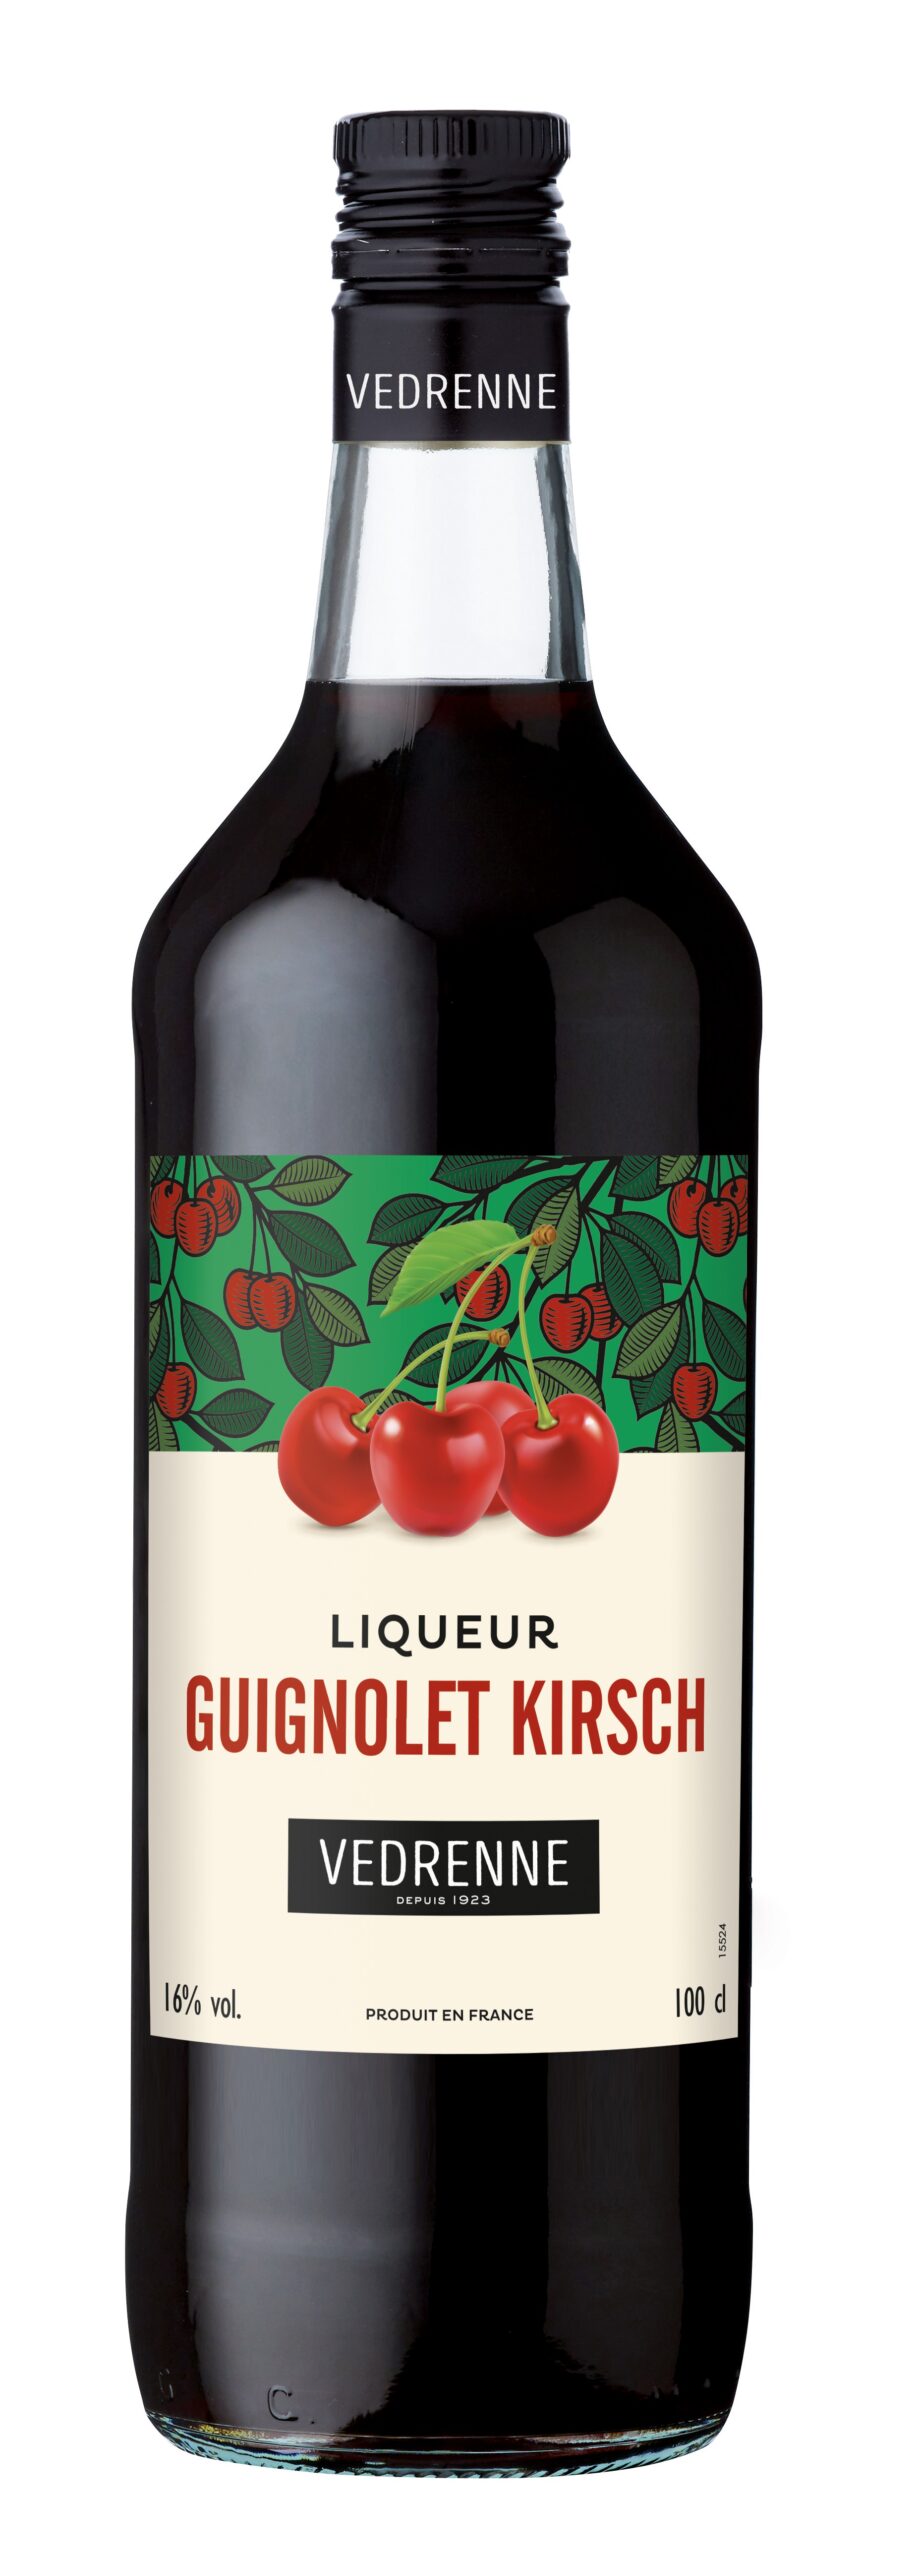 Liqueur Guignolet-Kirsch VEDRENNE 16% - 100cl